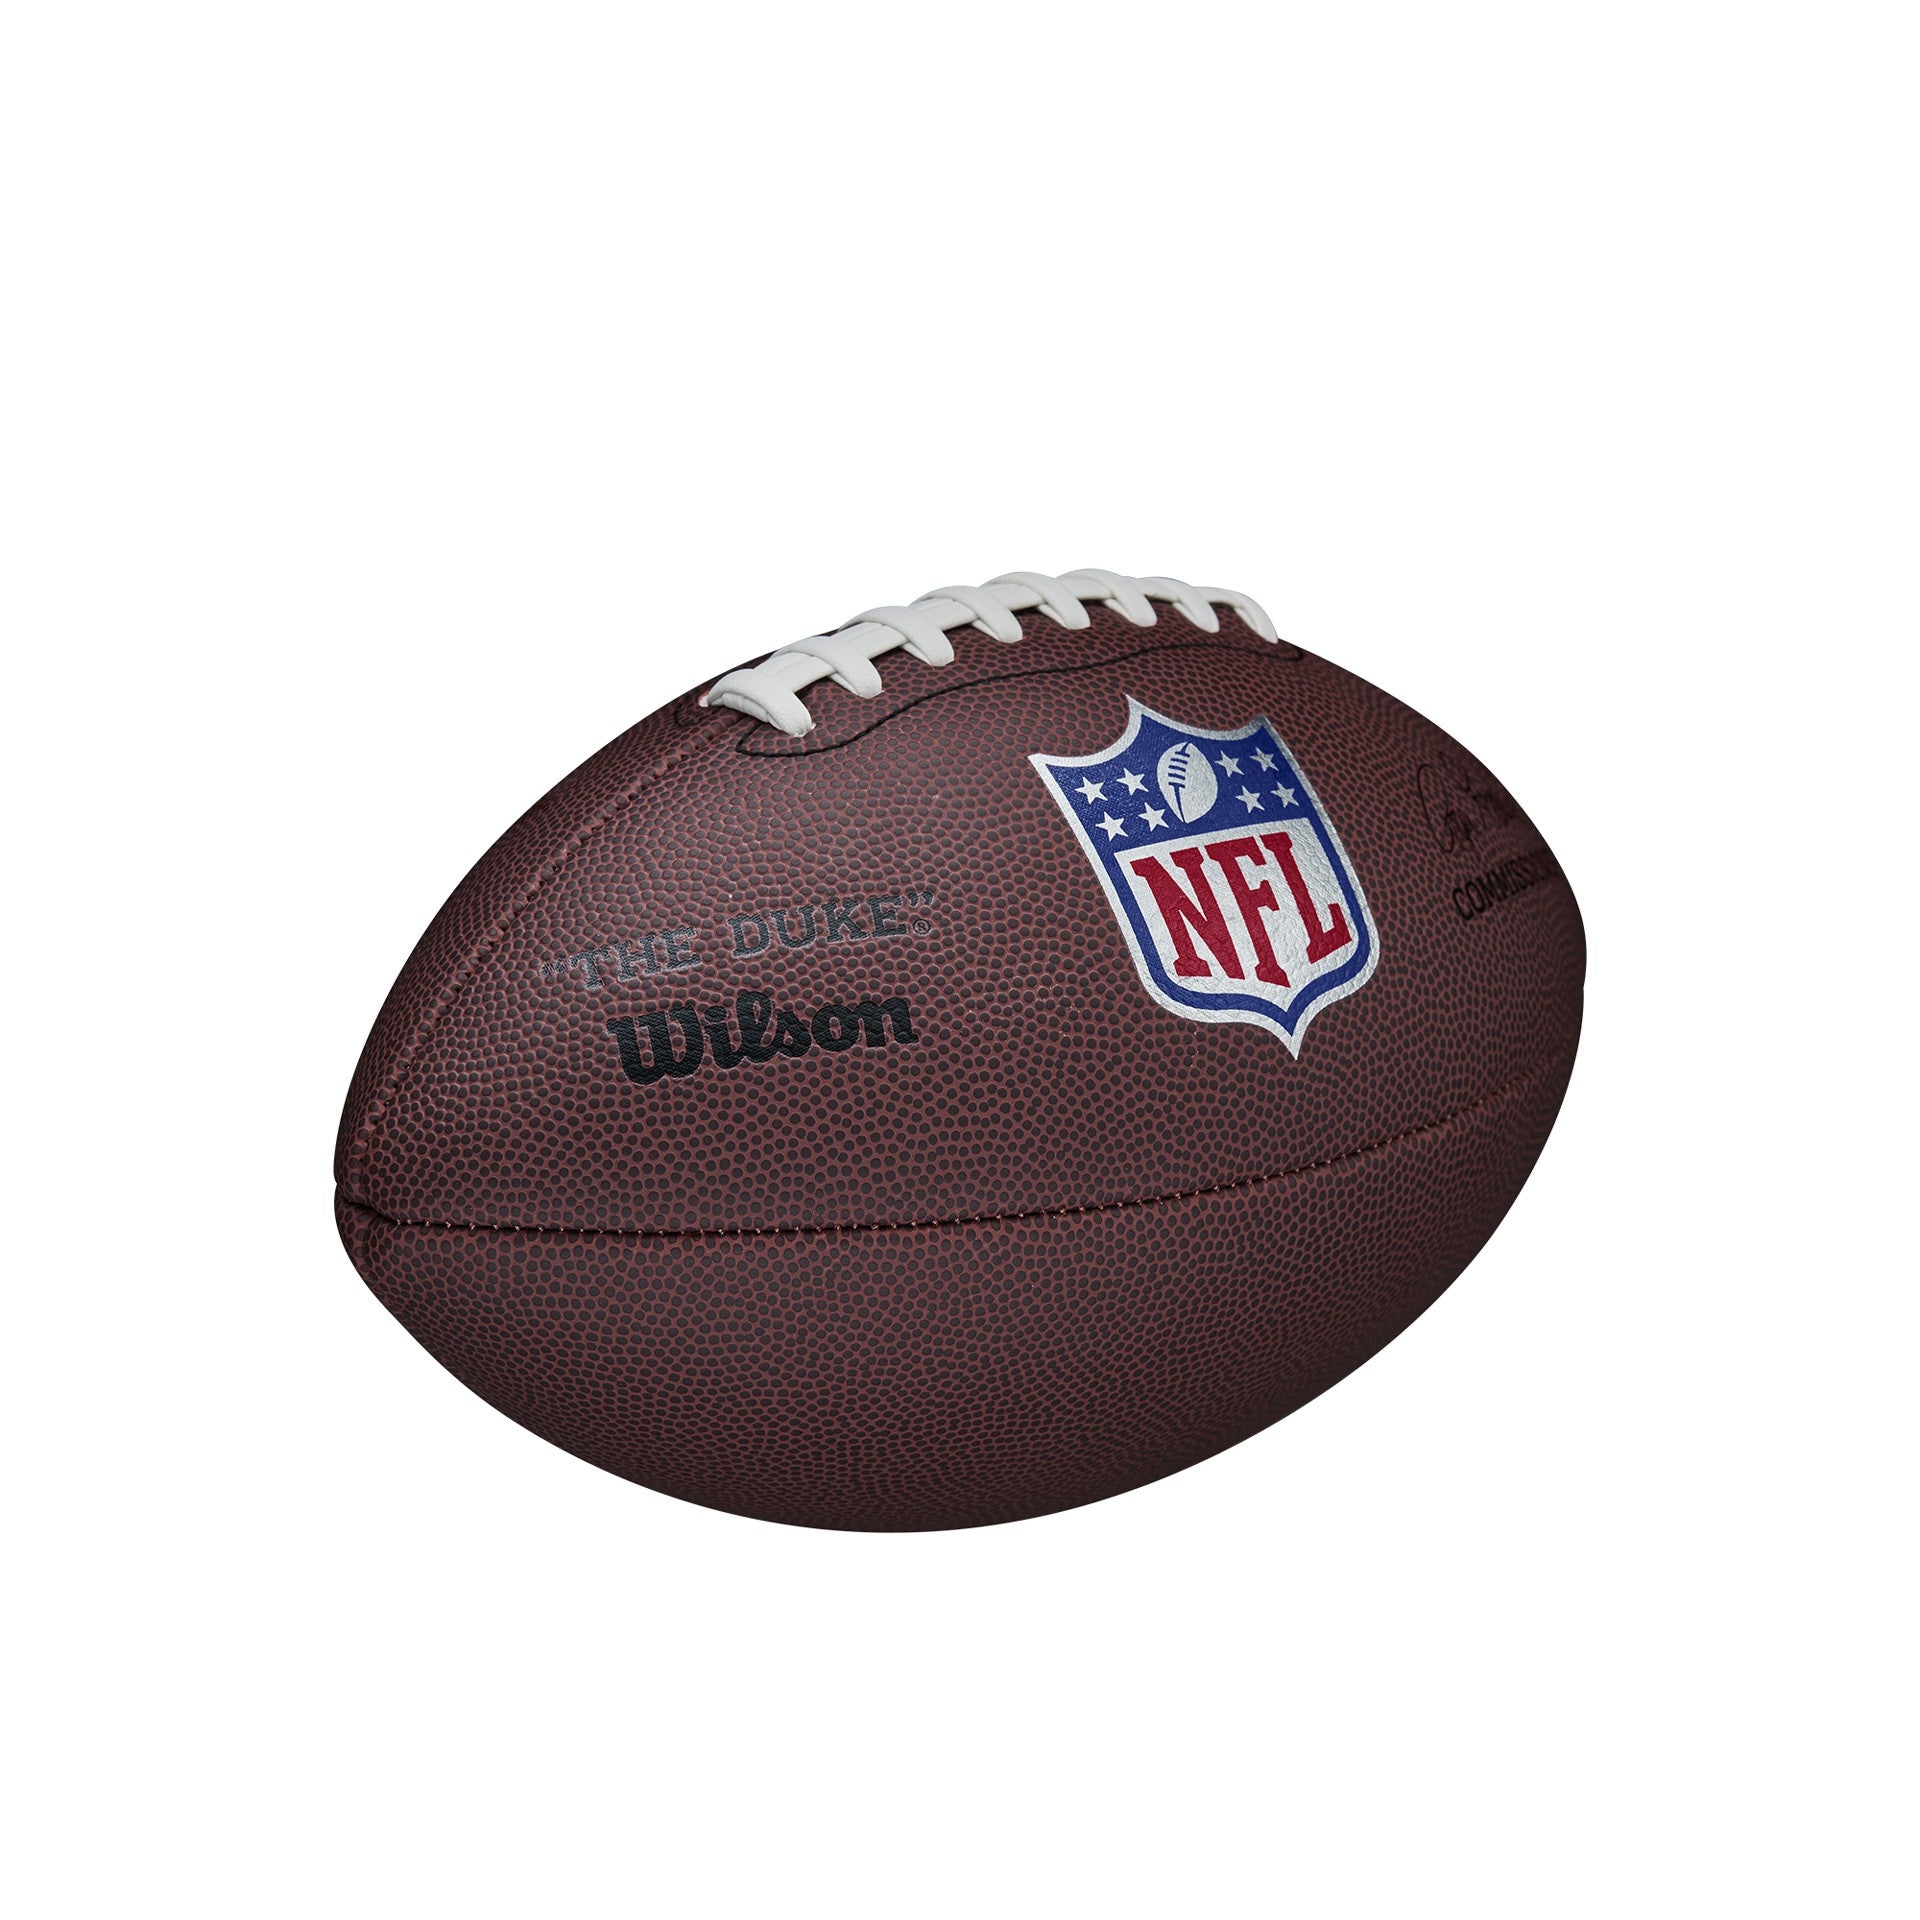 Balón Fútbol Americano Wilson Nfl Duke Réplica - Con Expositor -